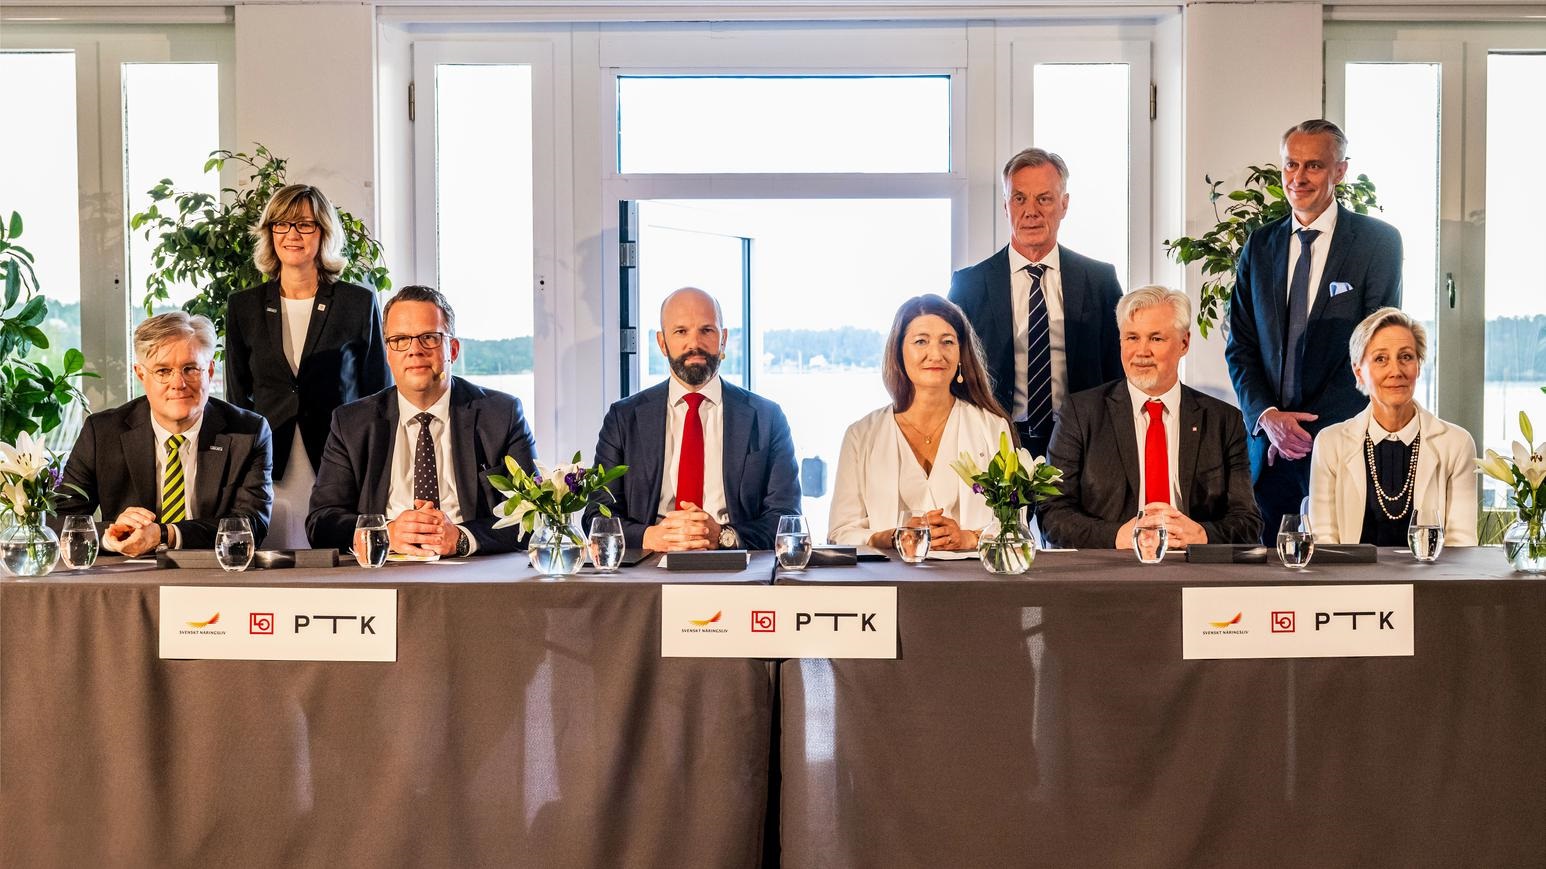 Sweden lands new landmark main agreement